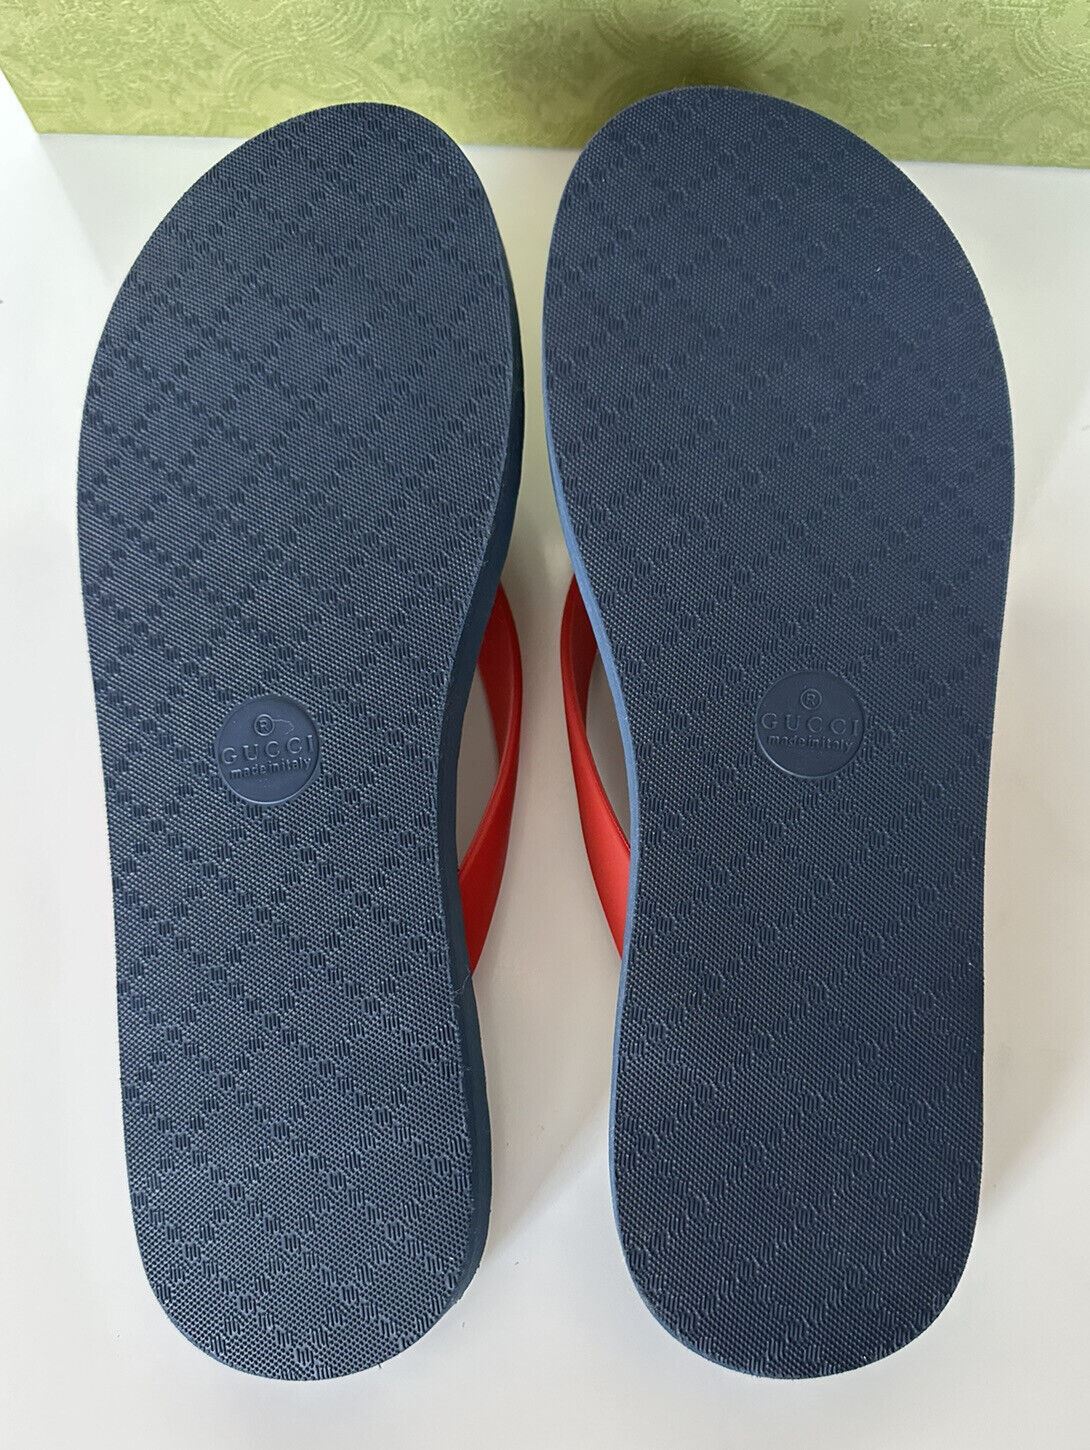 NIB Gucci Herren-Flipflops mit doppeltem G-Tanga in Rot/Blau, 10,5 US (Gucci 10) 659229